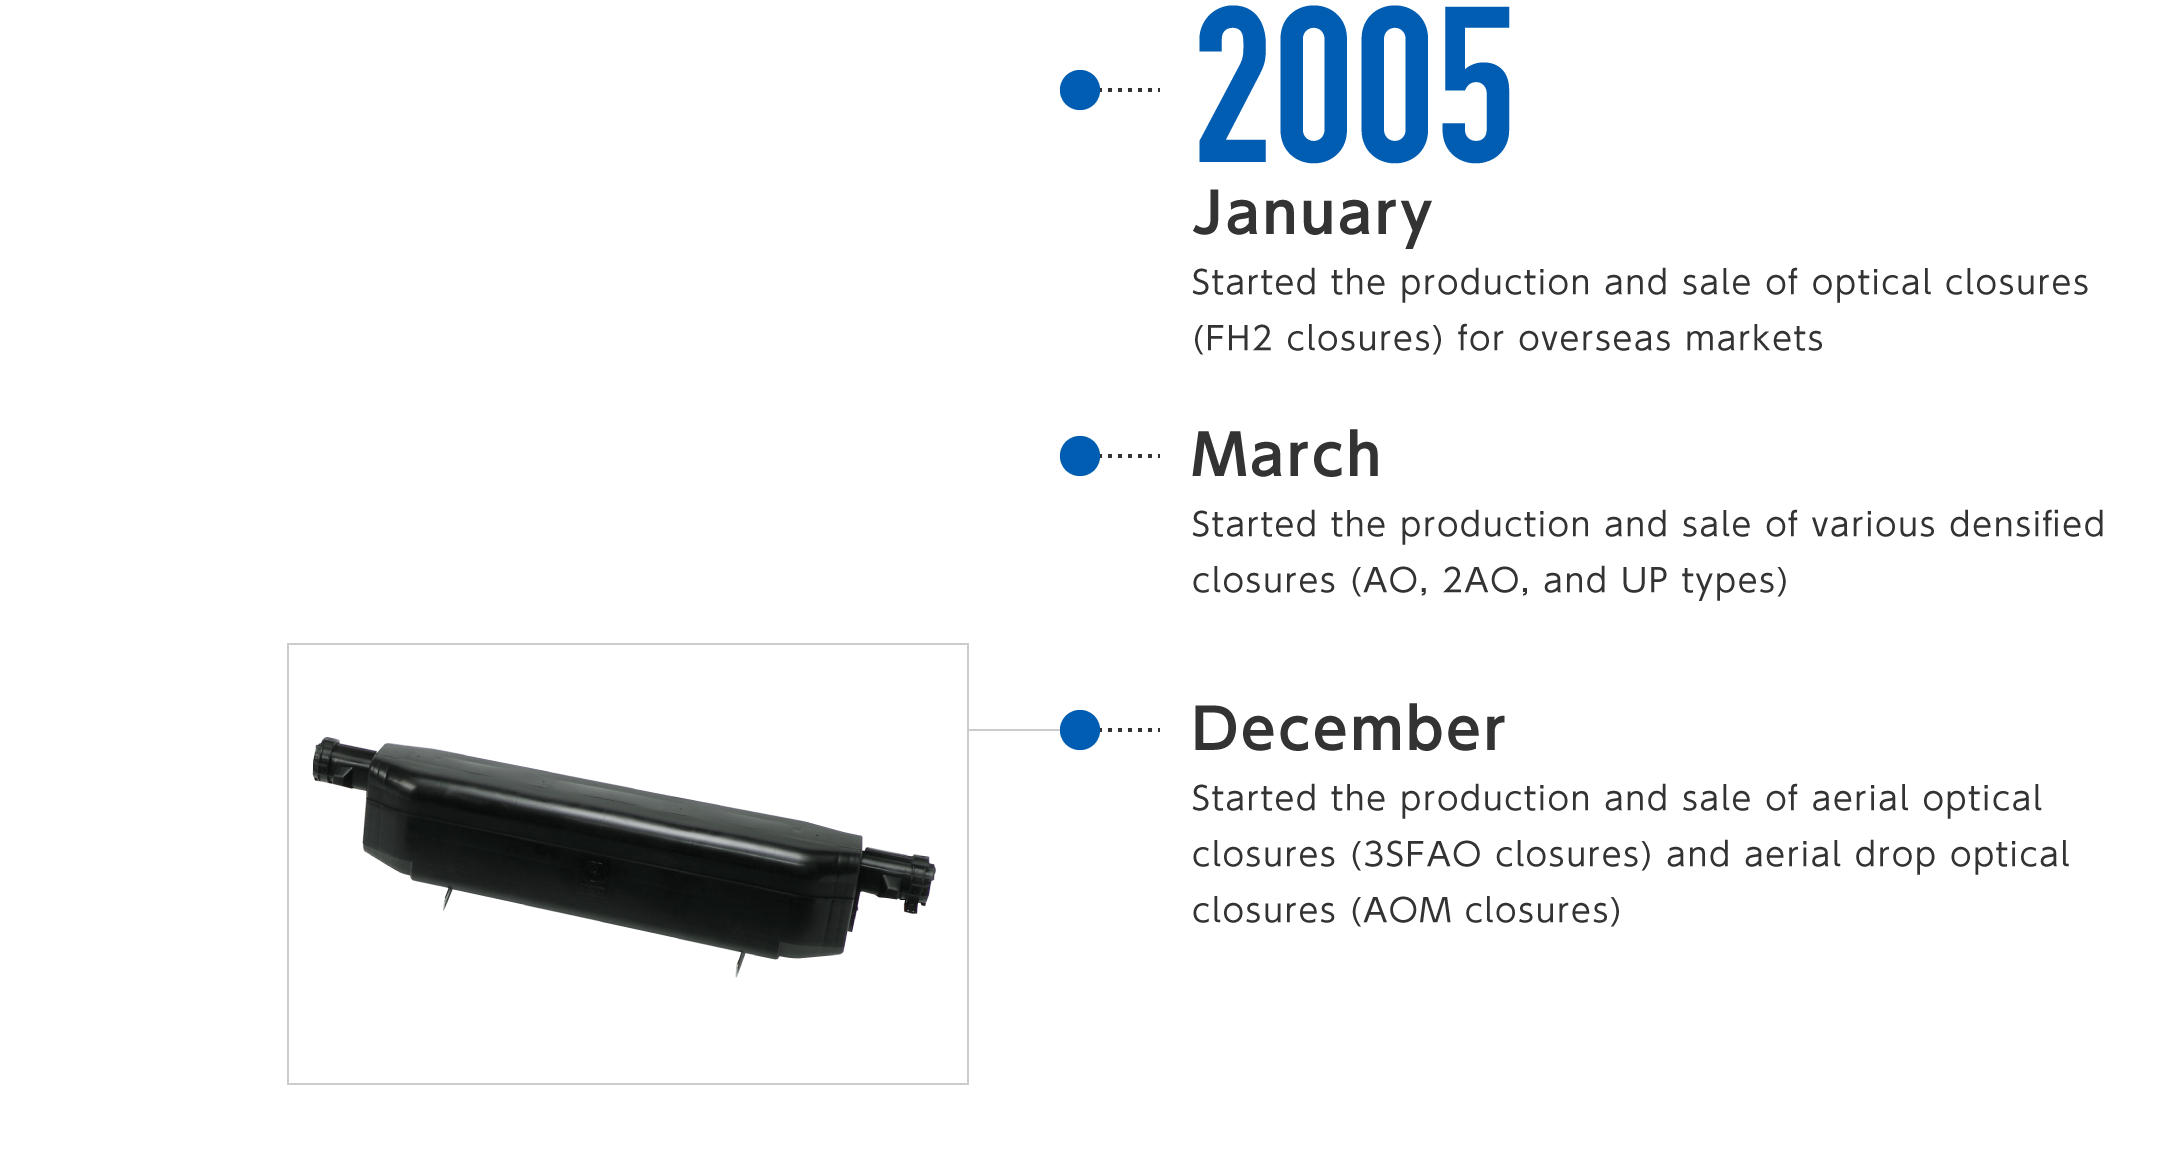 2005年1月-海外市場向け光クロージャ(FH2クロージャ)の製造・販売を開始、3月-各種高密度化クロージャ(AO型、2AO型、UP型)の製造・販売を開始、12月-架空光クロージャ(3SFAOクロージャ)、架空引落し用光クロージャ(AOMクロージャ)の製造・販売を開始